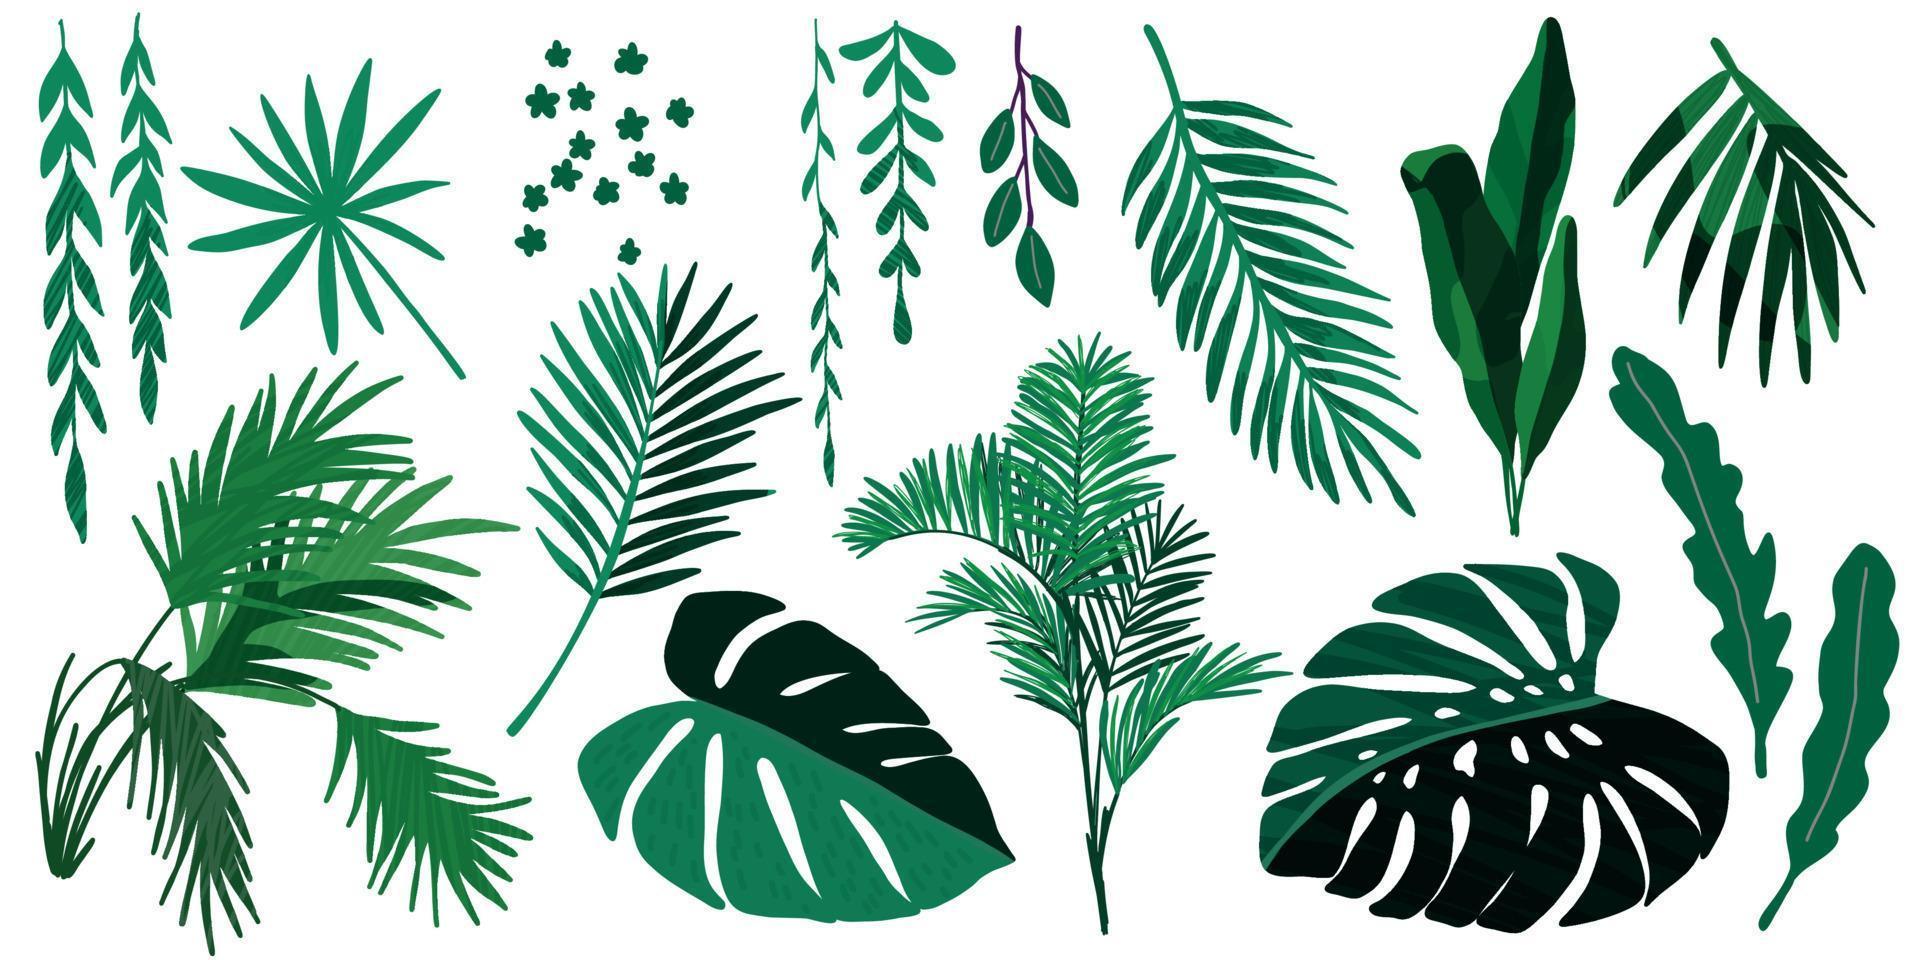 coleção de folhas tropicais, conjunto de vetores desenhados à mão